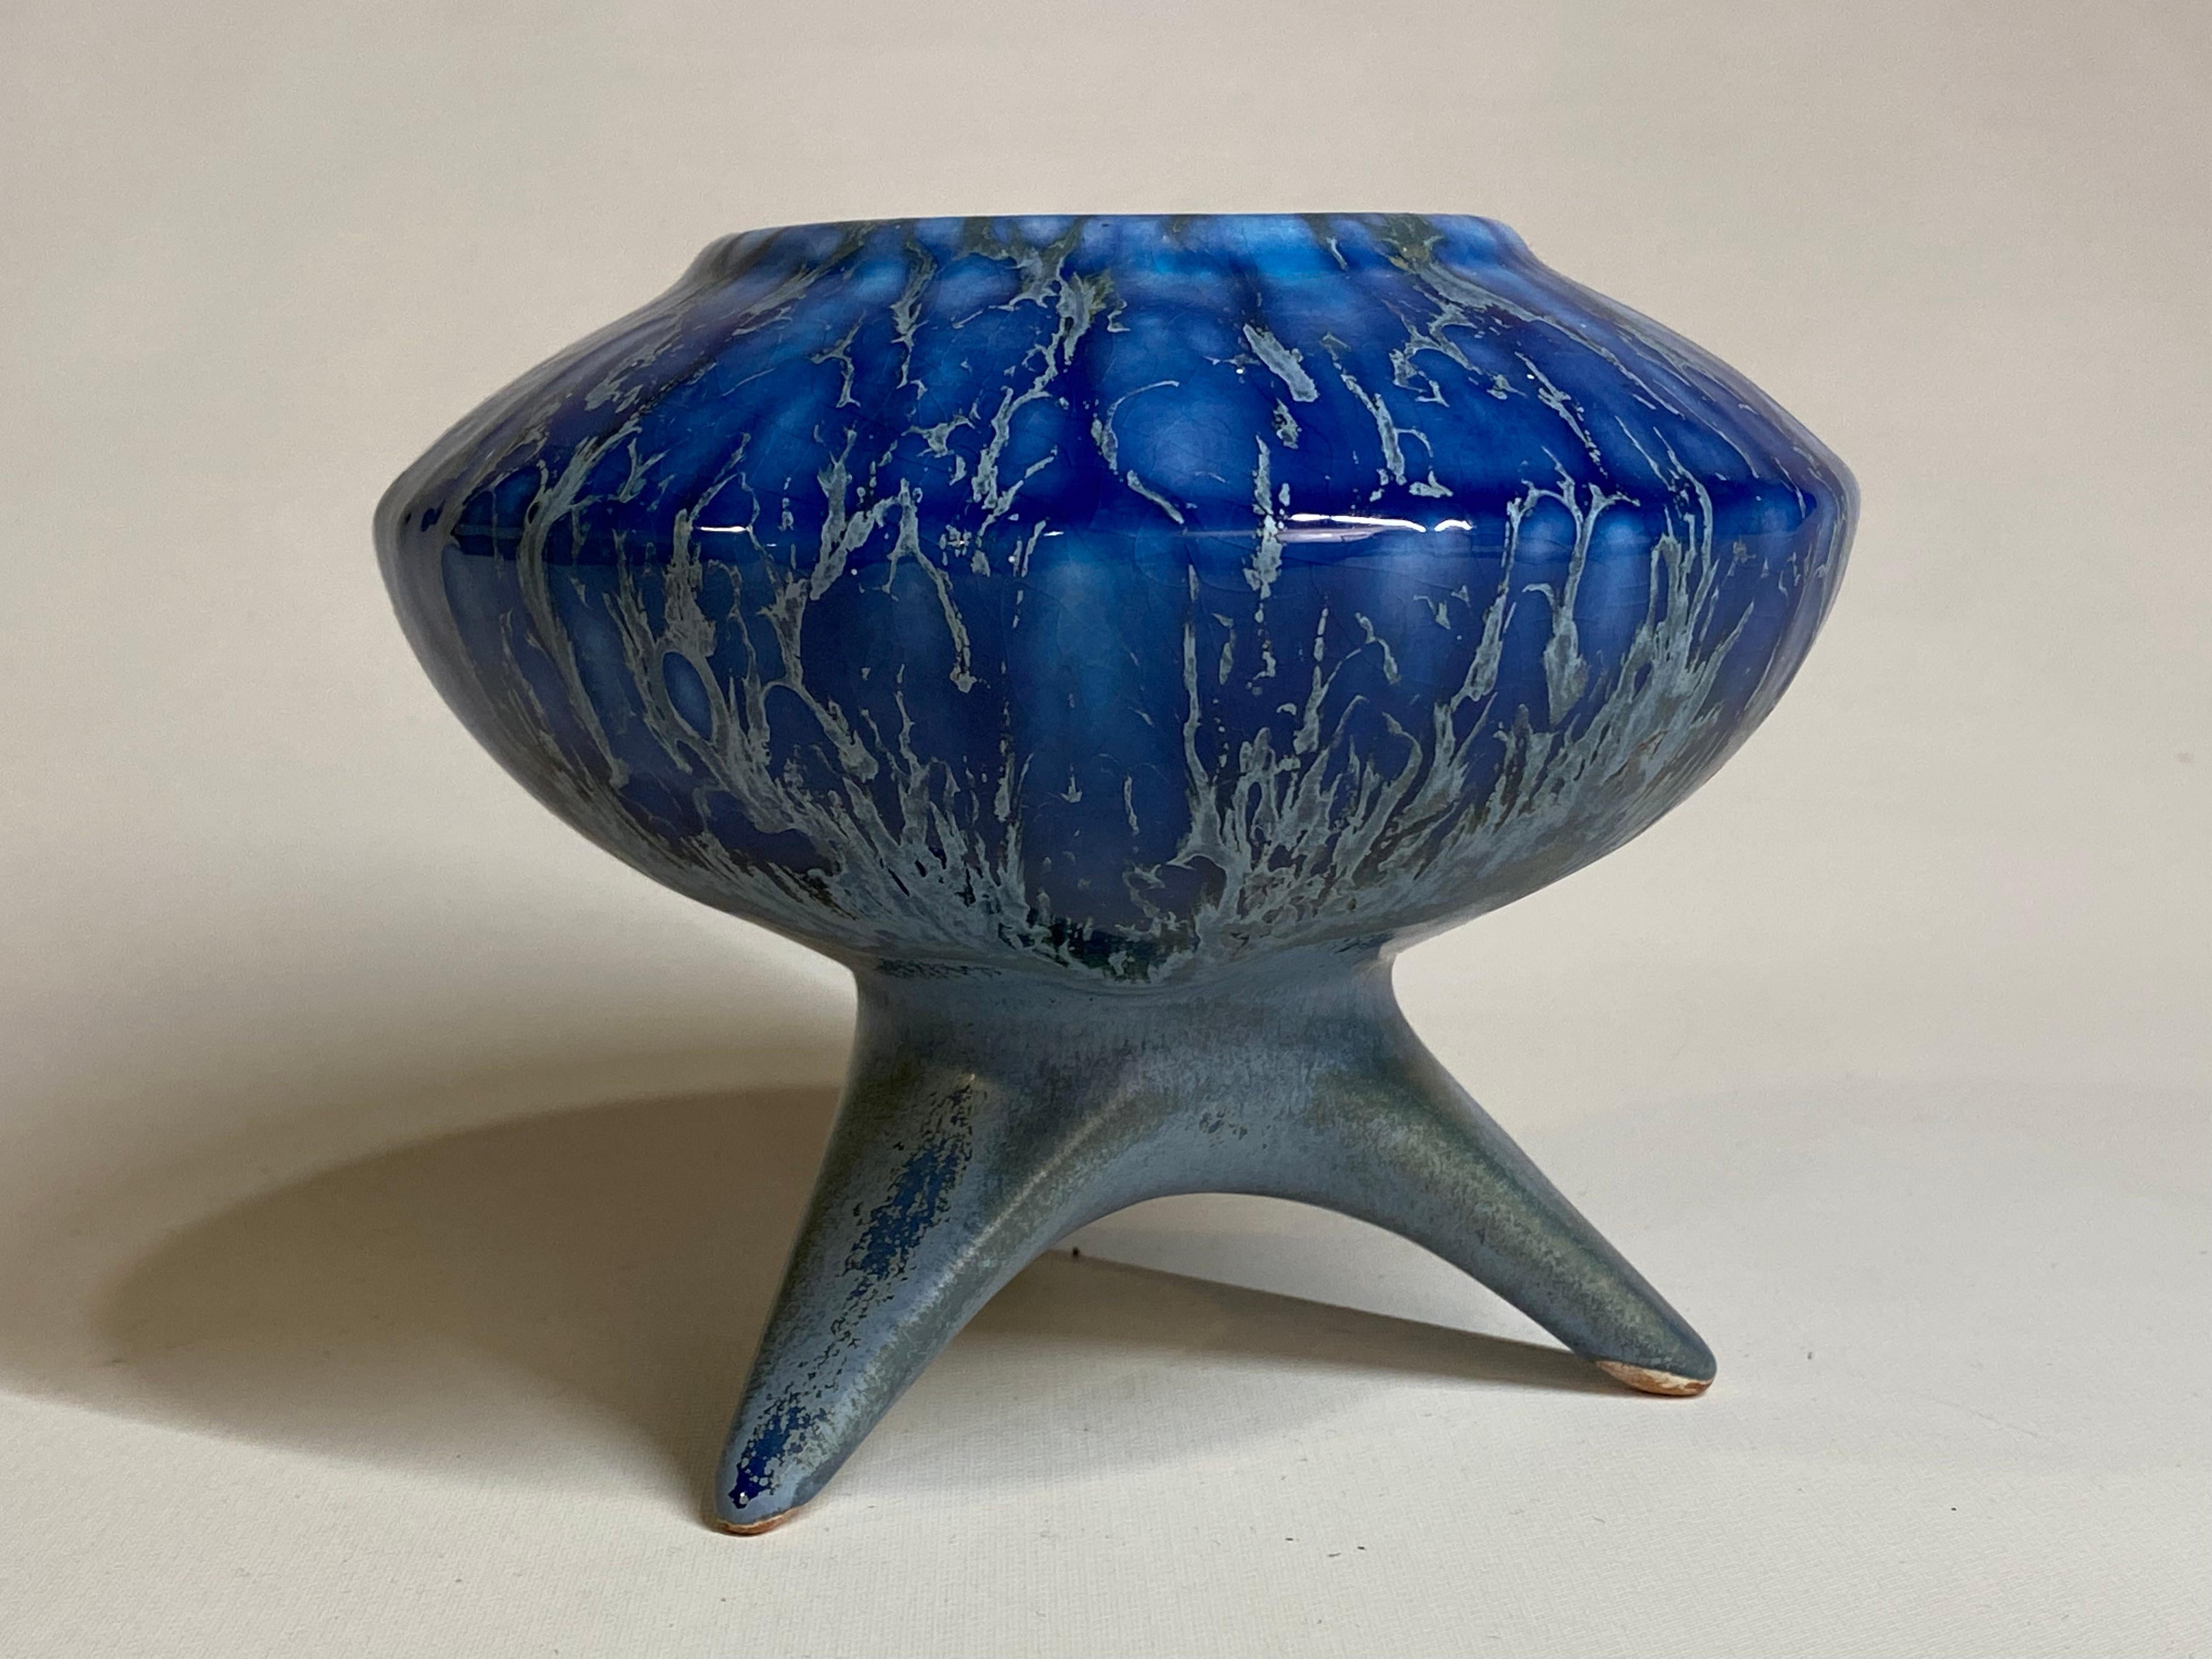 Erstaunliche futuristische Mid-Century Modern Fett Lava und Flambe blau glasiert Stativ Vase, ca. 1950-1960. Glänzend bis matt getropftes Gefäß mit drei gespreizten Beinen, die eine raumgreifende, untertassenartige Schale tragen. Die Glasurfarben